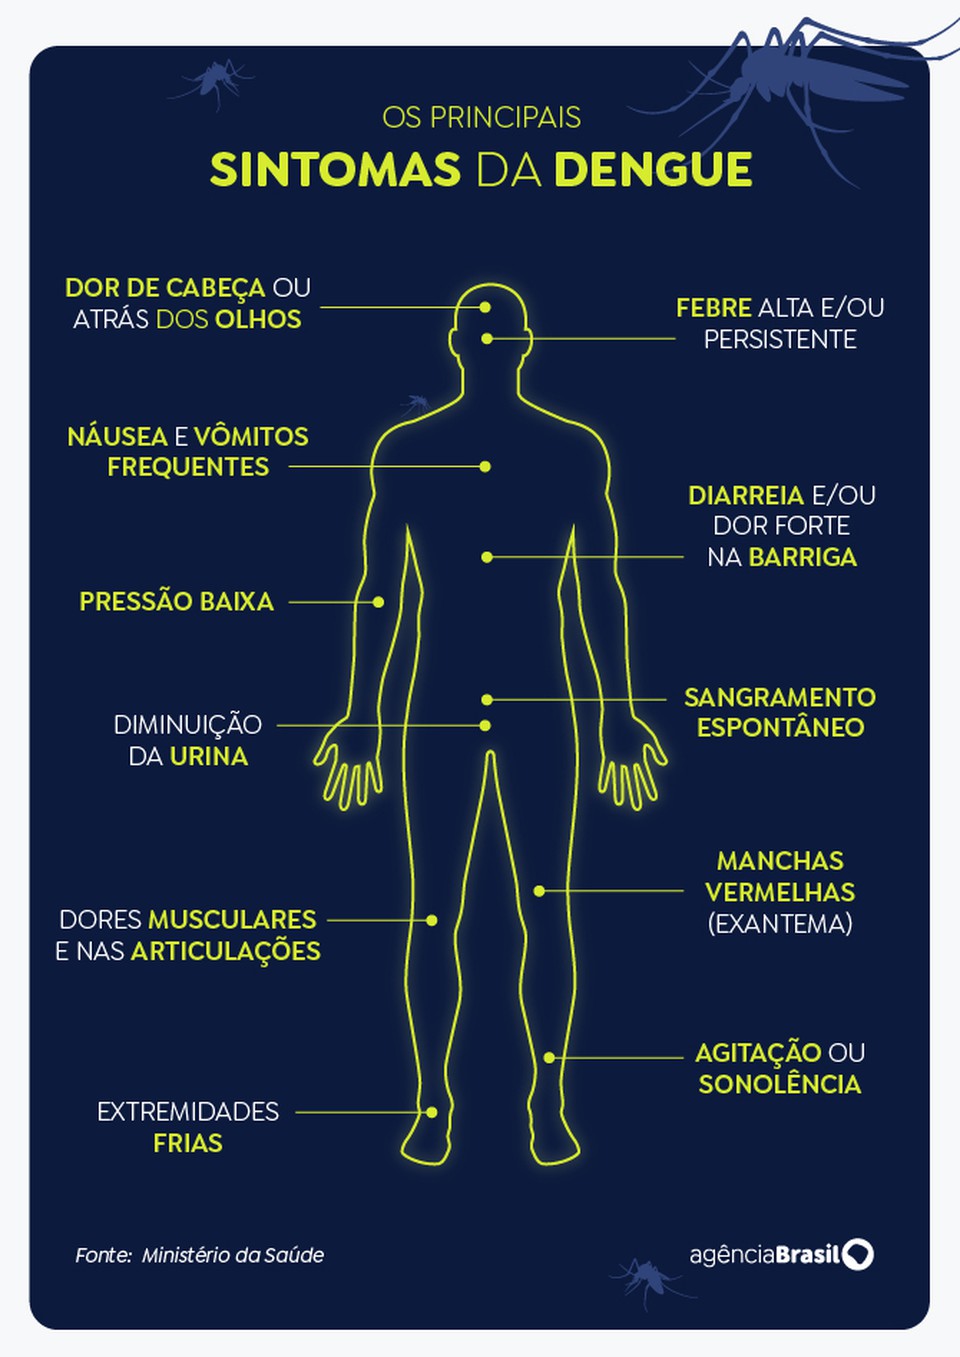 Principais sintomas da dengue. (Foto: Reprodução/Agência Brasil)